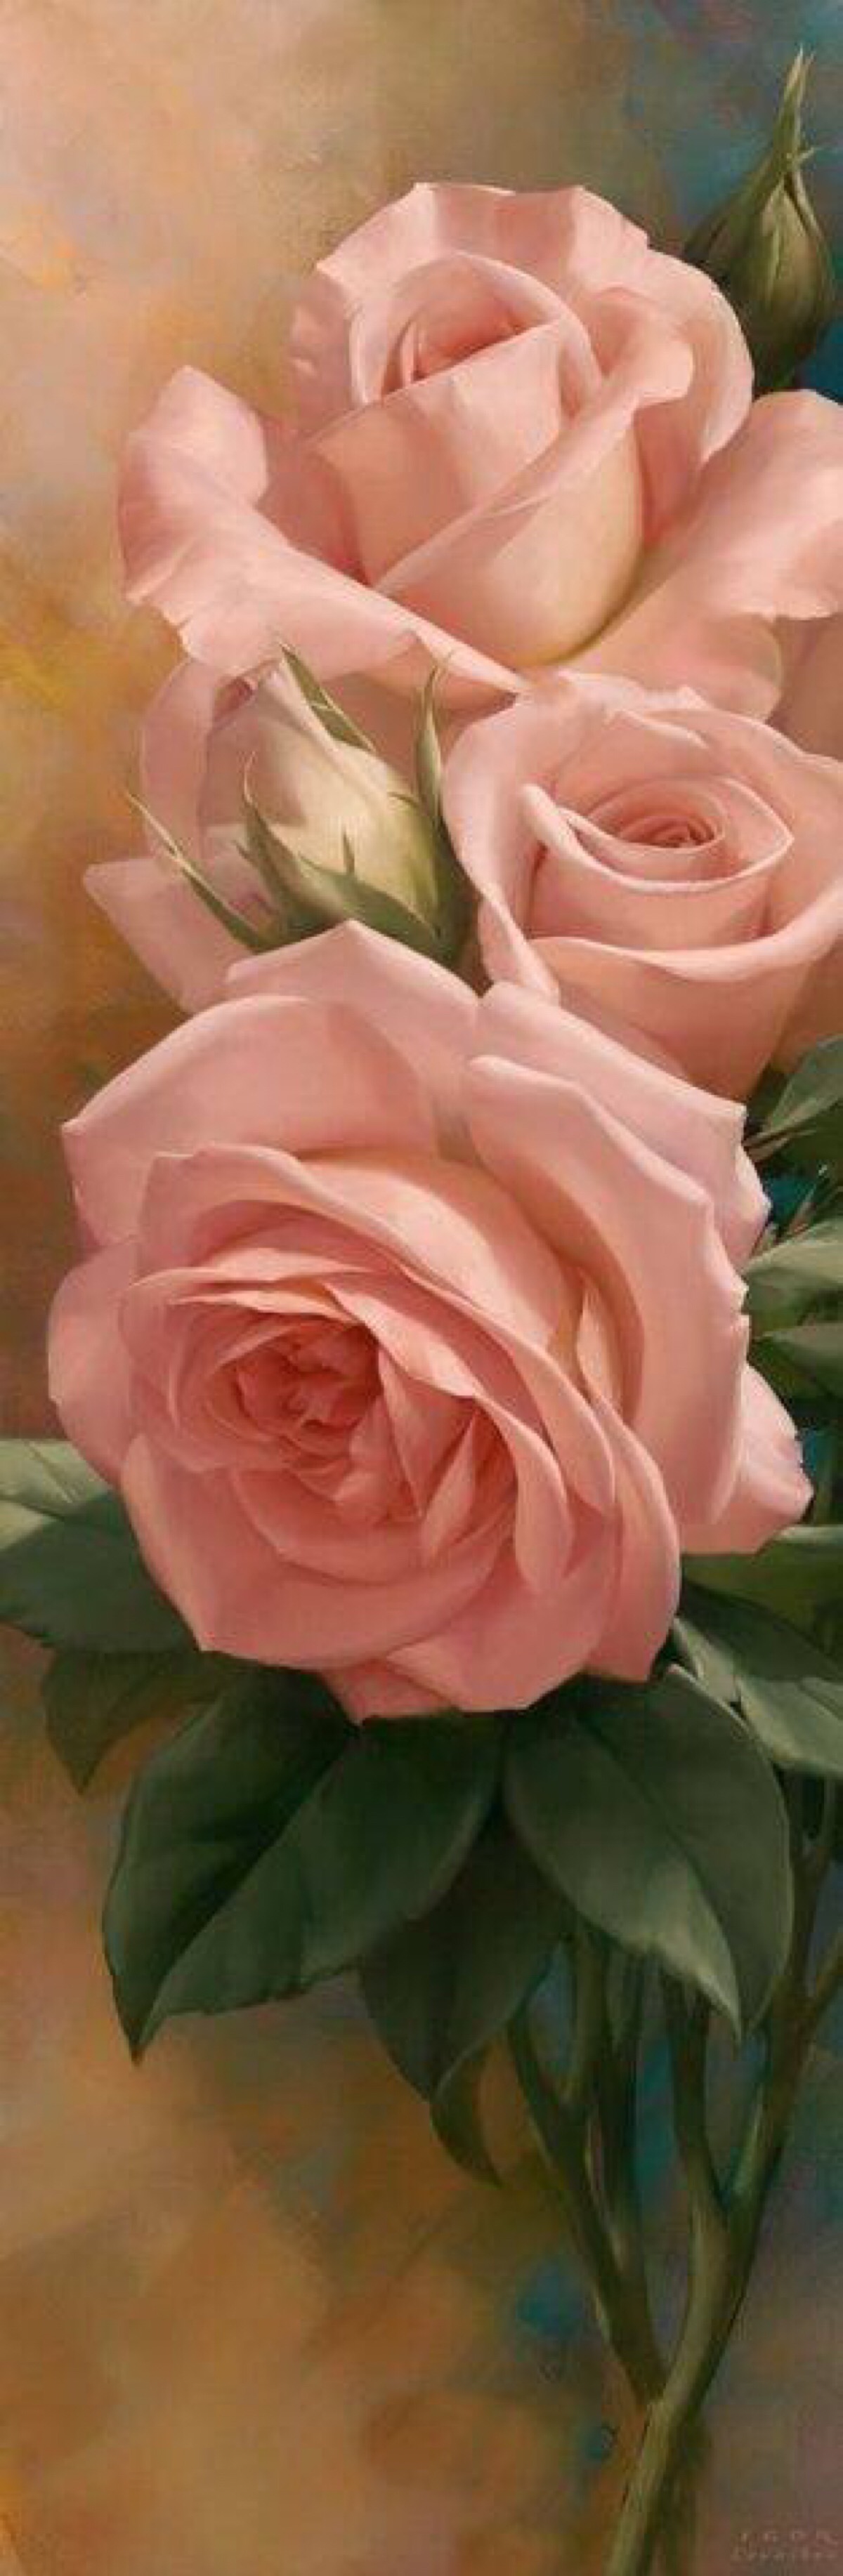 俄罗斯画家艾格尔·利亚索(igor levashov)花卉油画作品粉色玫瑰